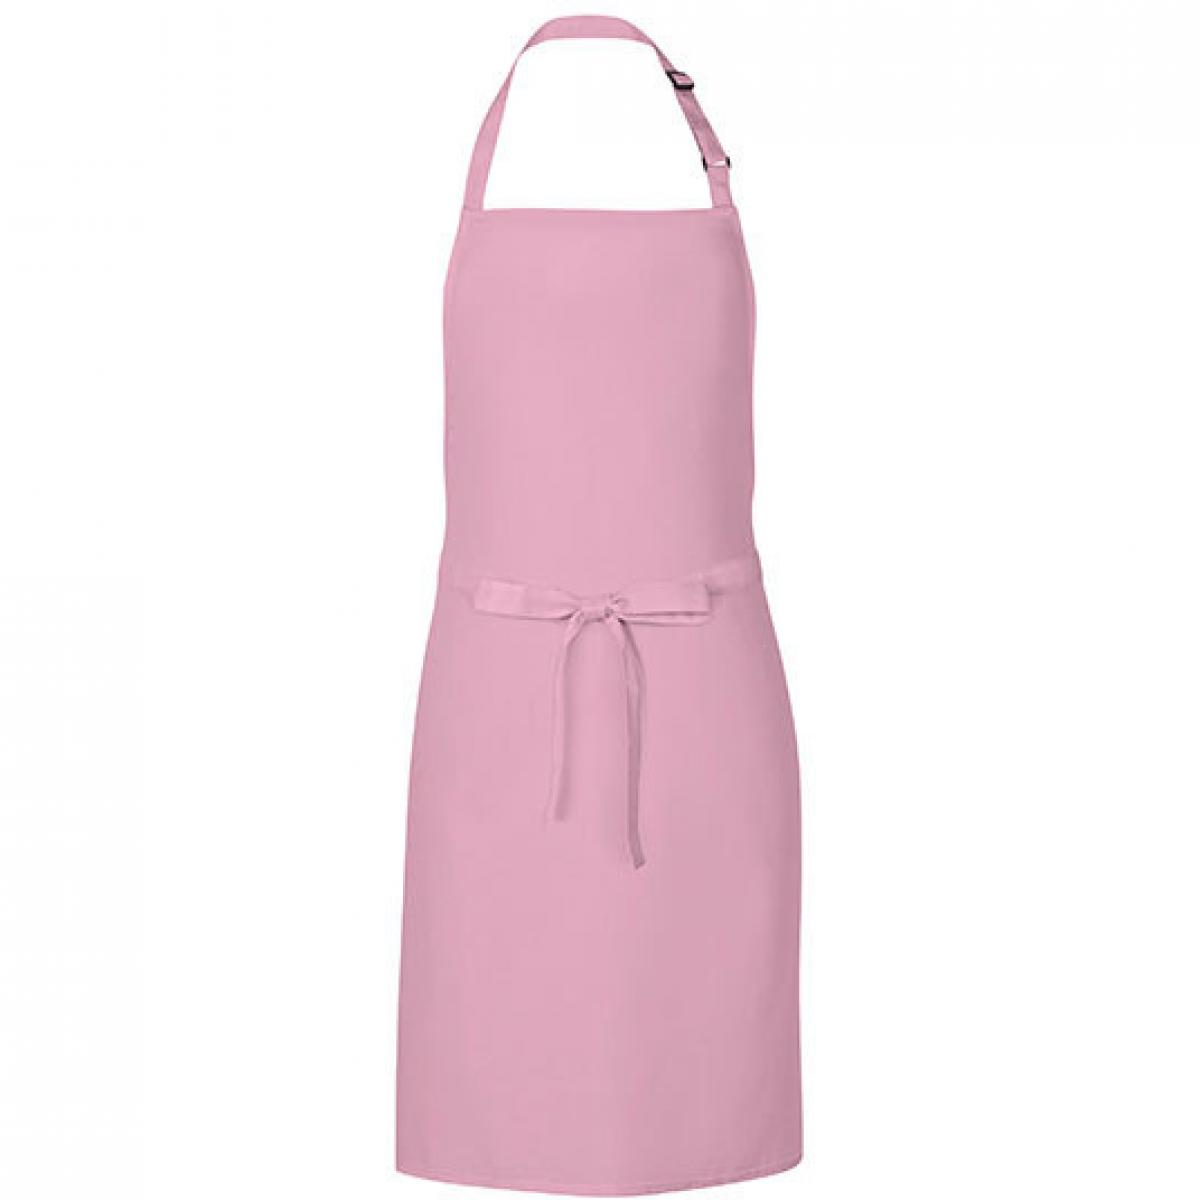 Hersteller: Link Kitchen Wear Herstellernummer: MS8572 Artikelbezeichnung: Multi Apron - 72 x 85 cm - Waschbar bis 60 °C Farbe: Pink (ca. Pantone 1895)